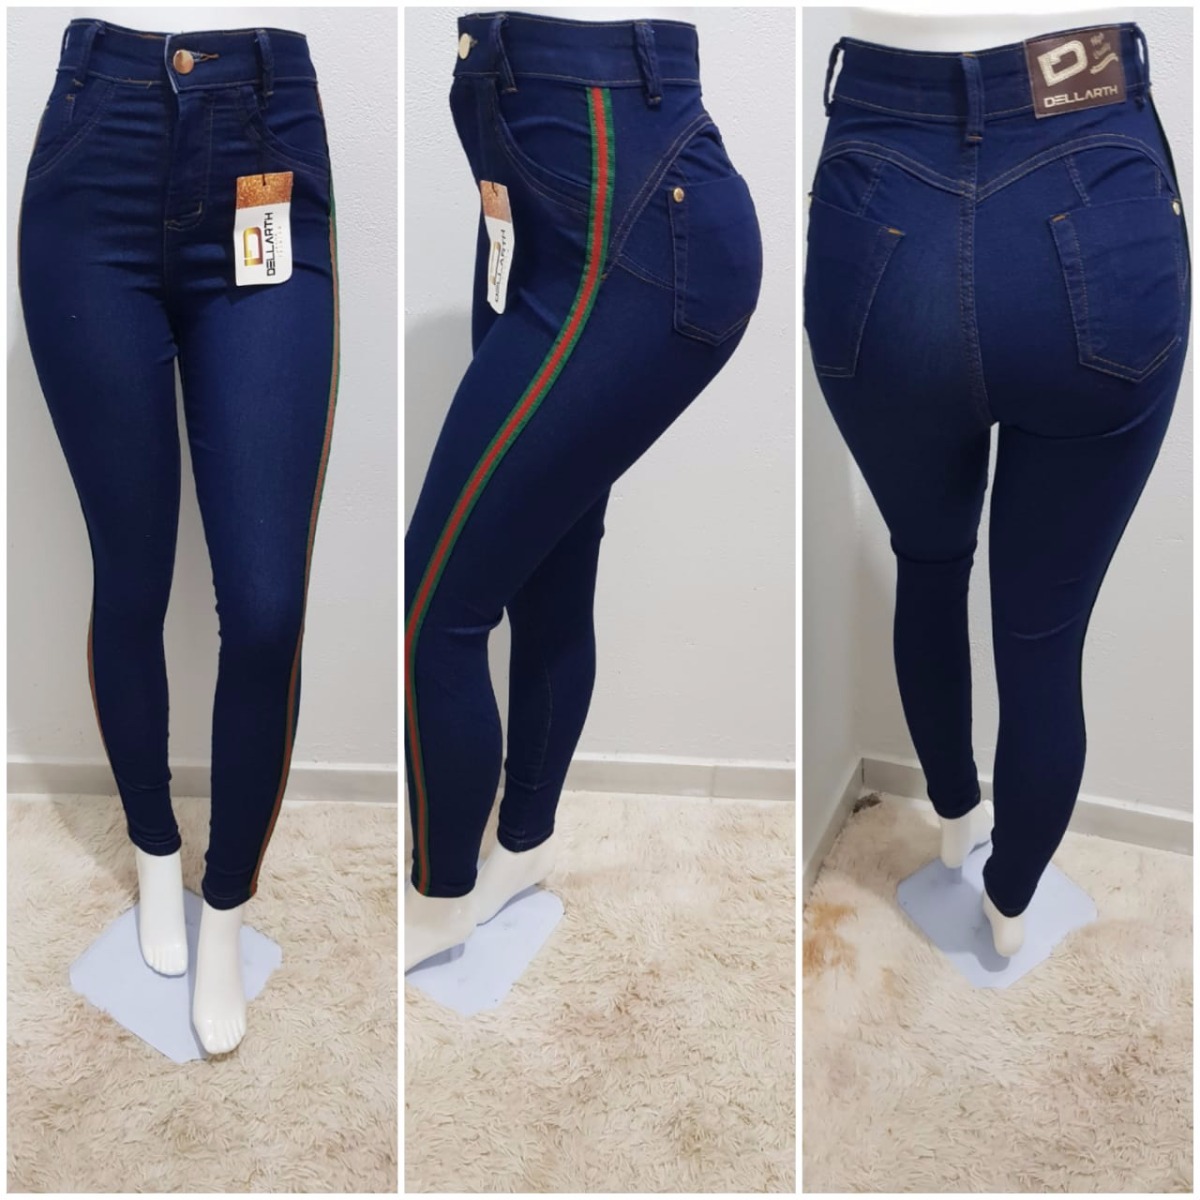 calça jeans com listra lateral feminina